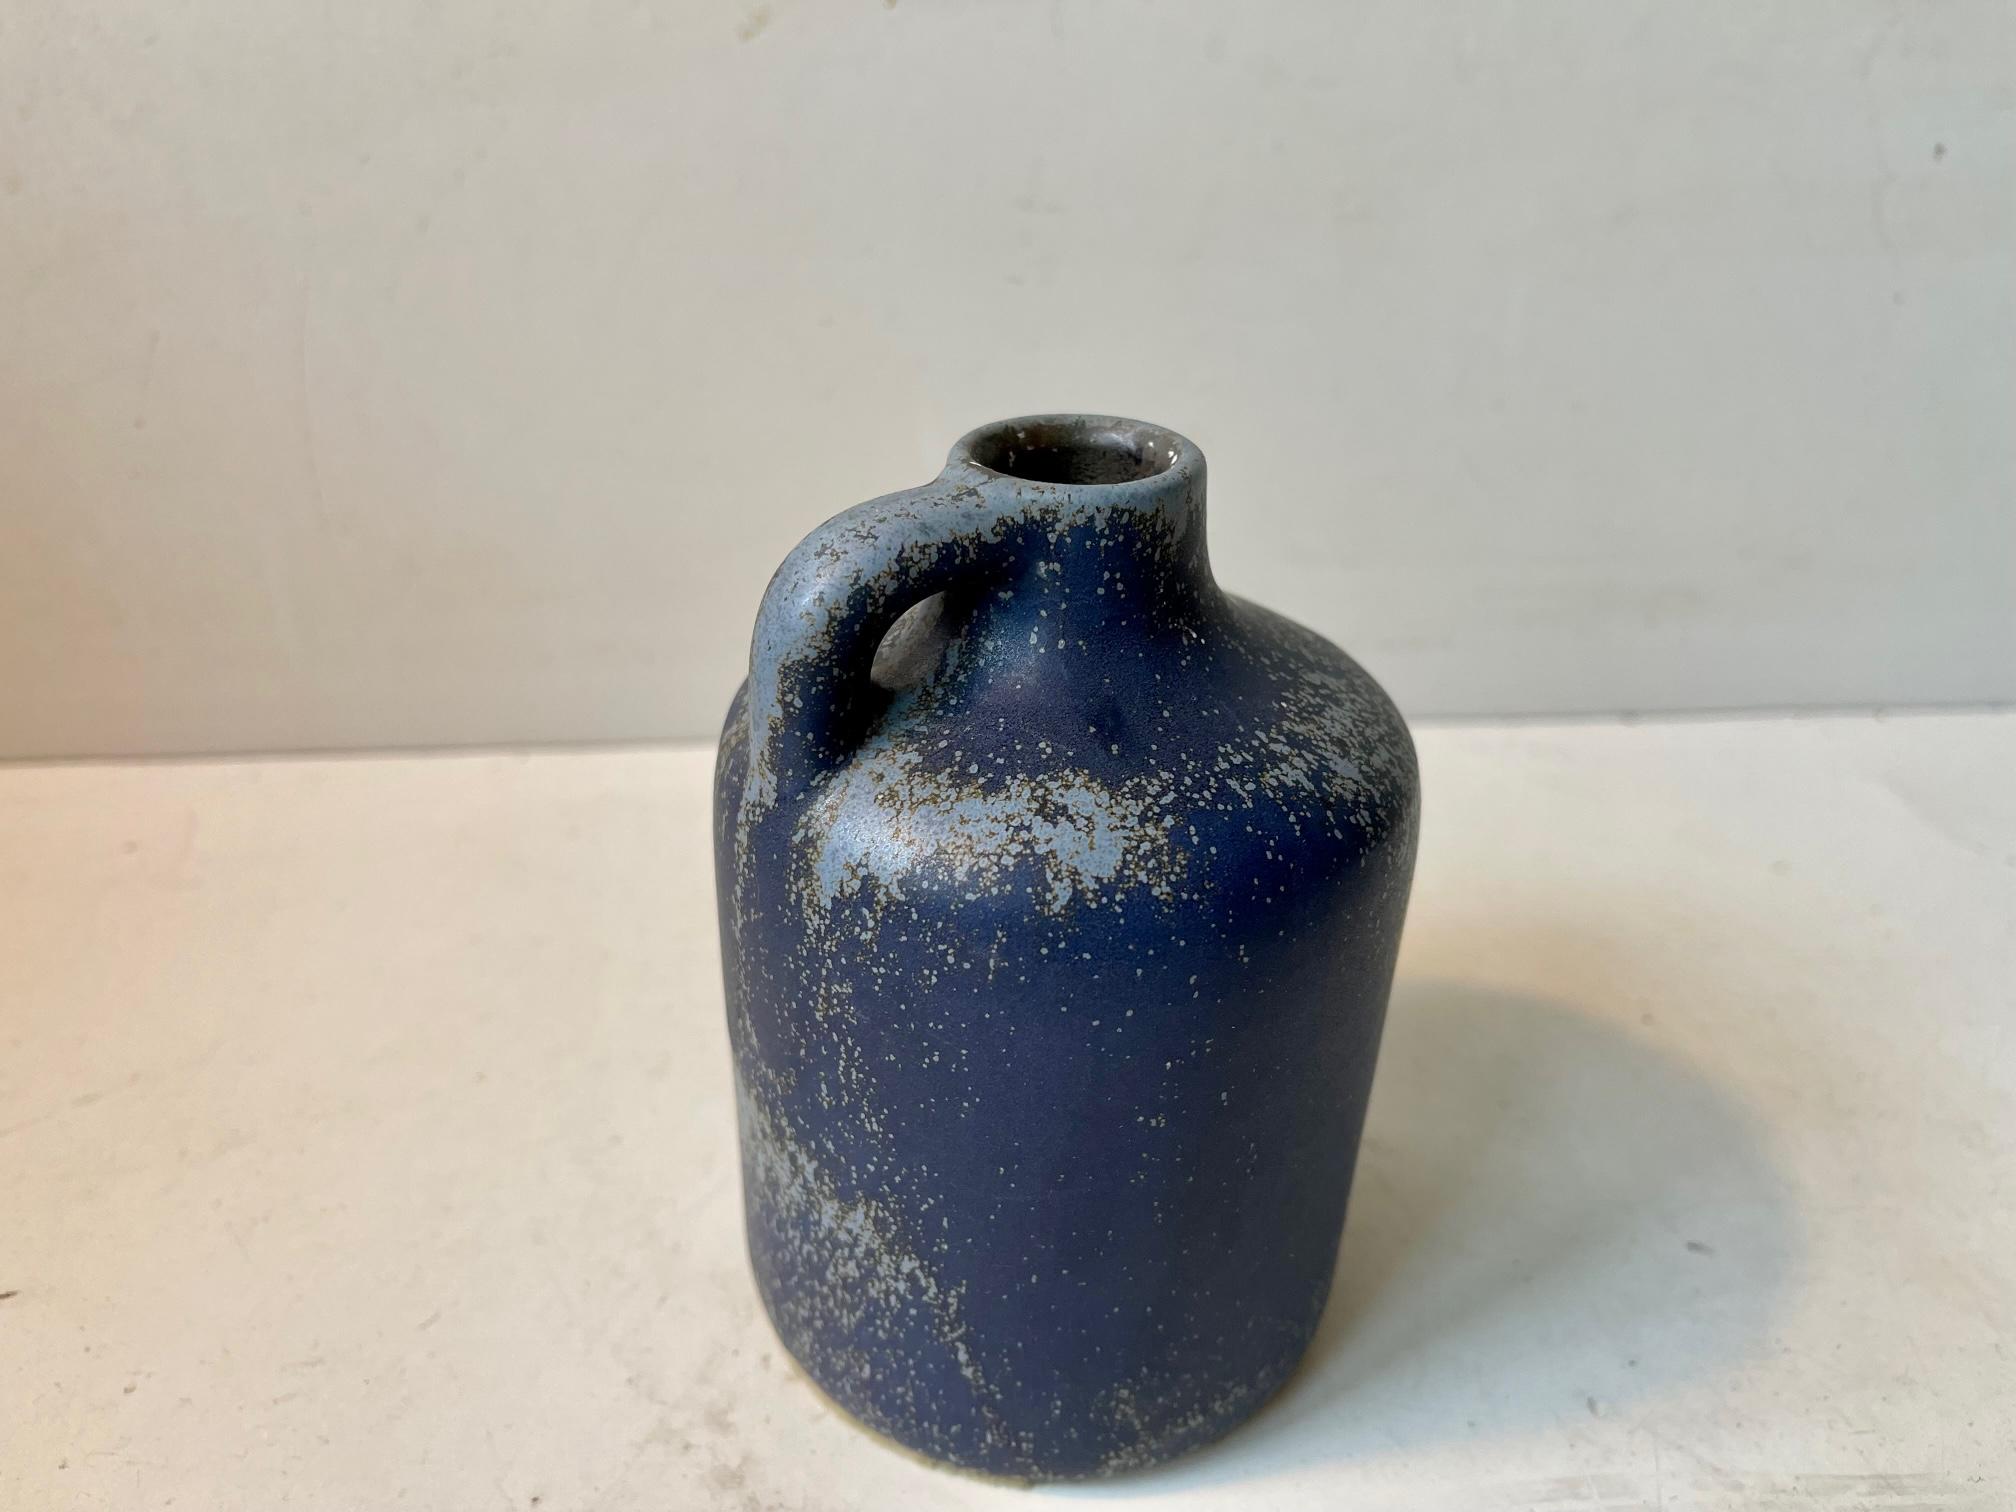 Glazed Swedish Midcentury Stoneware Vase with Speckled Blue Glaze, 1960s